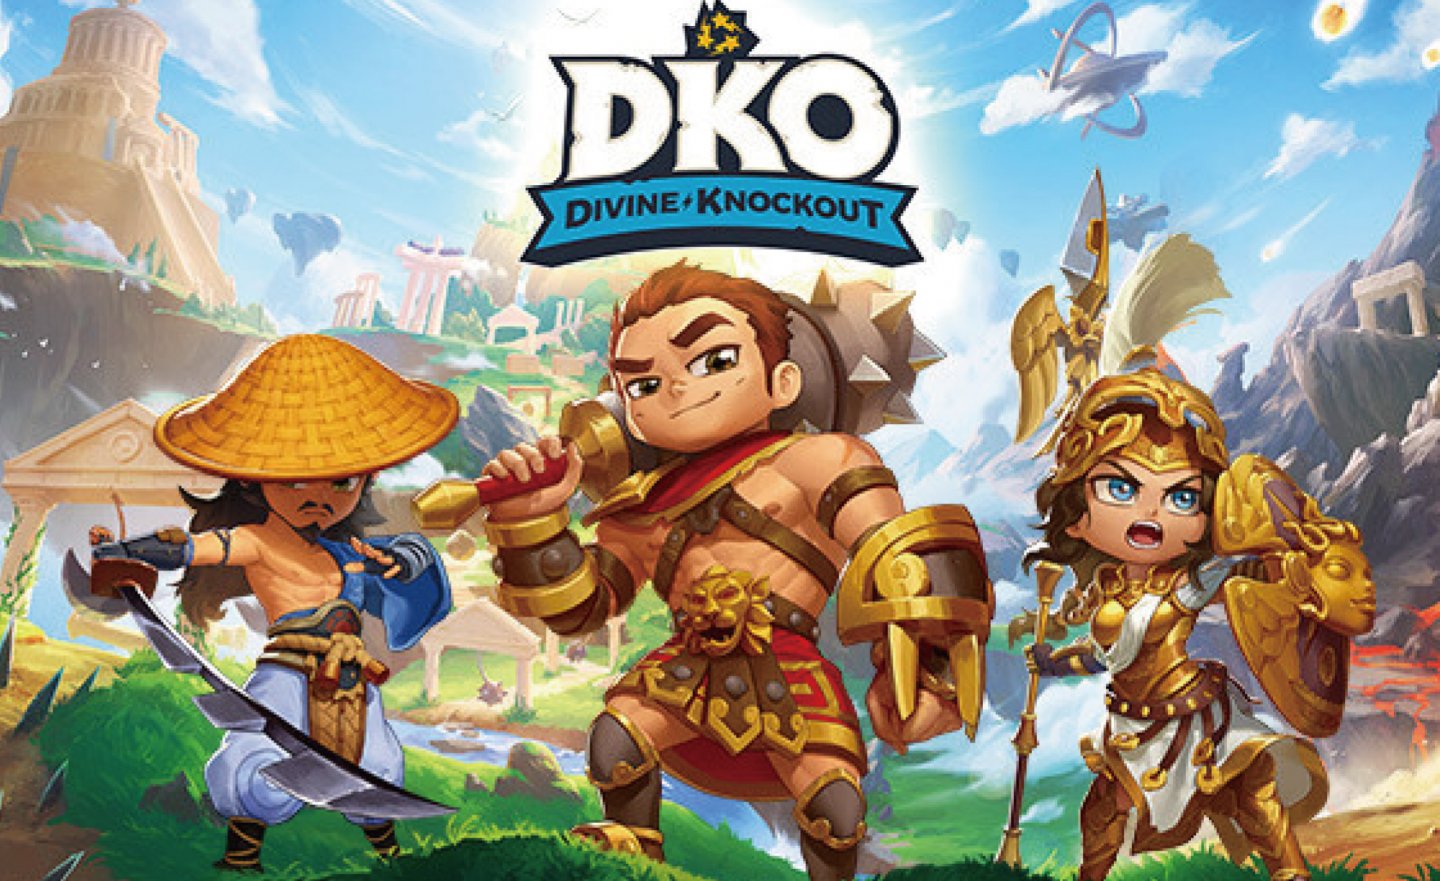 【限時免費】登入 Steam 領取多人動作競技遊戲《Divine Knockout》（DKO），12 月 15 日上午 1:00 前即可永久保留